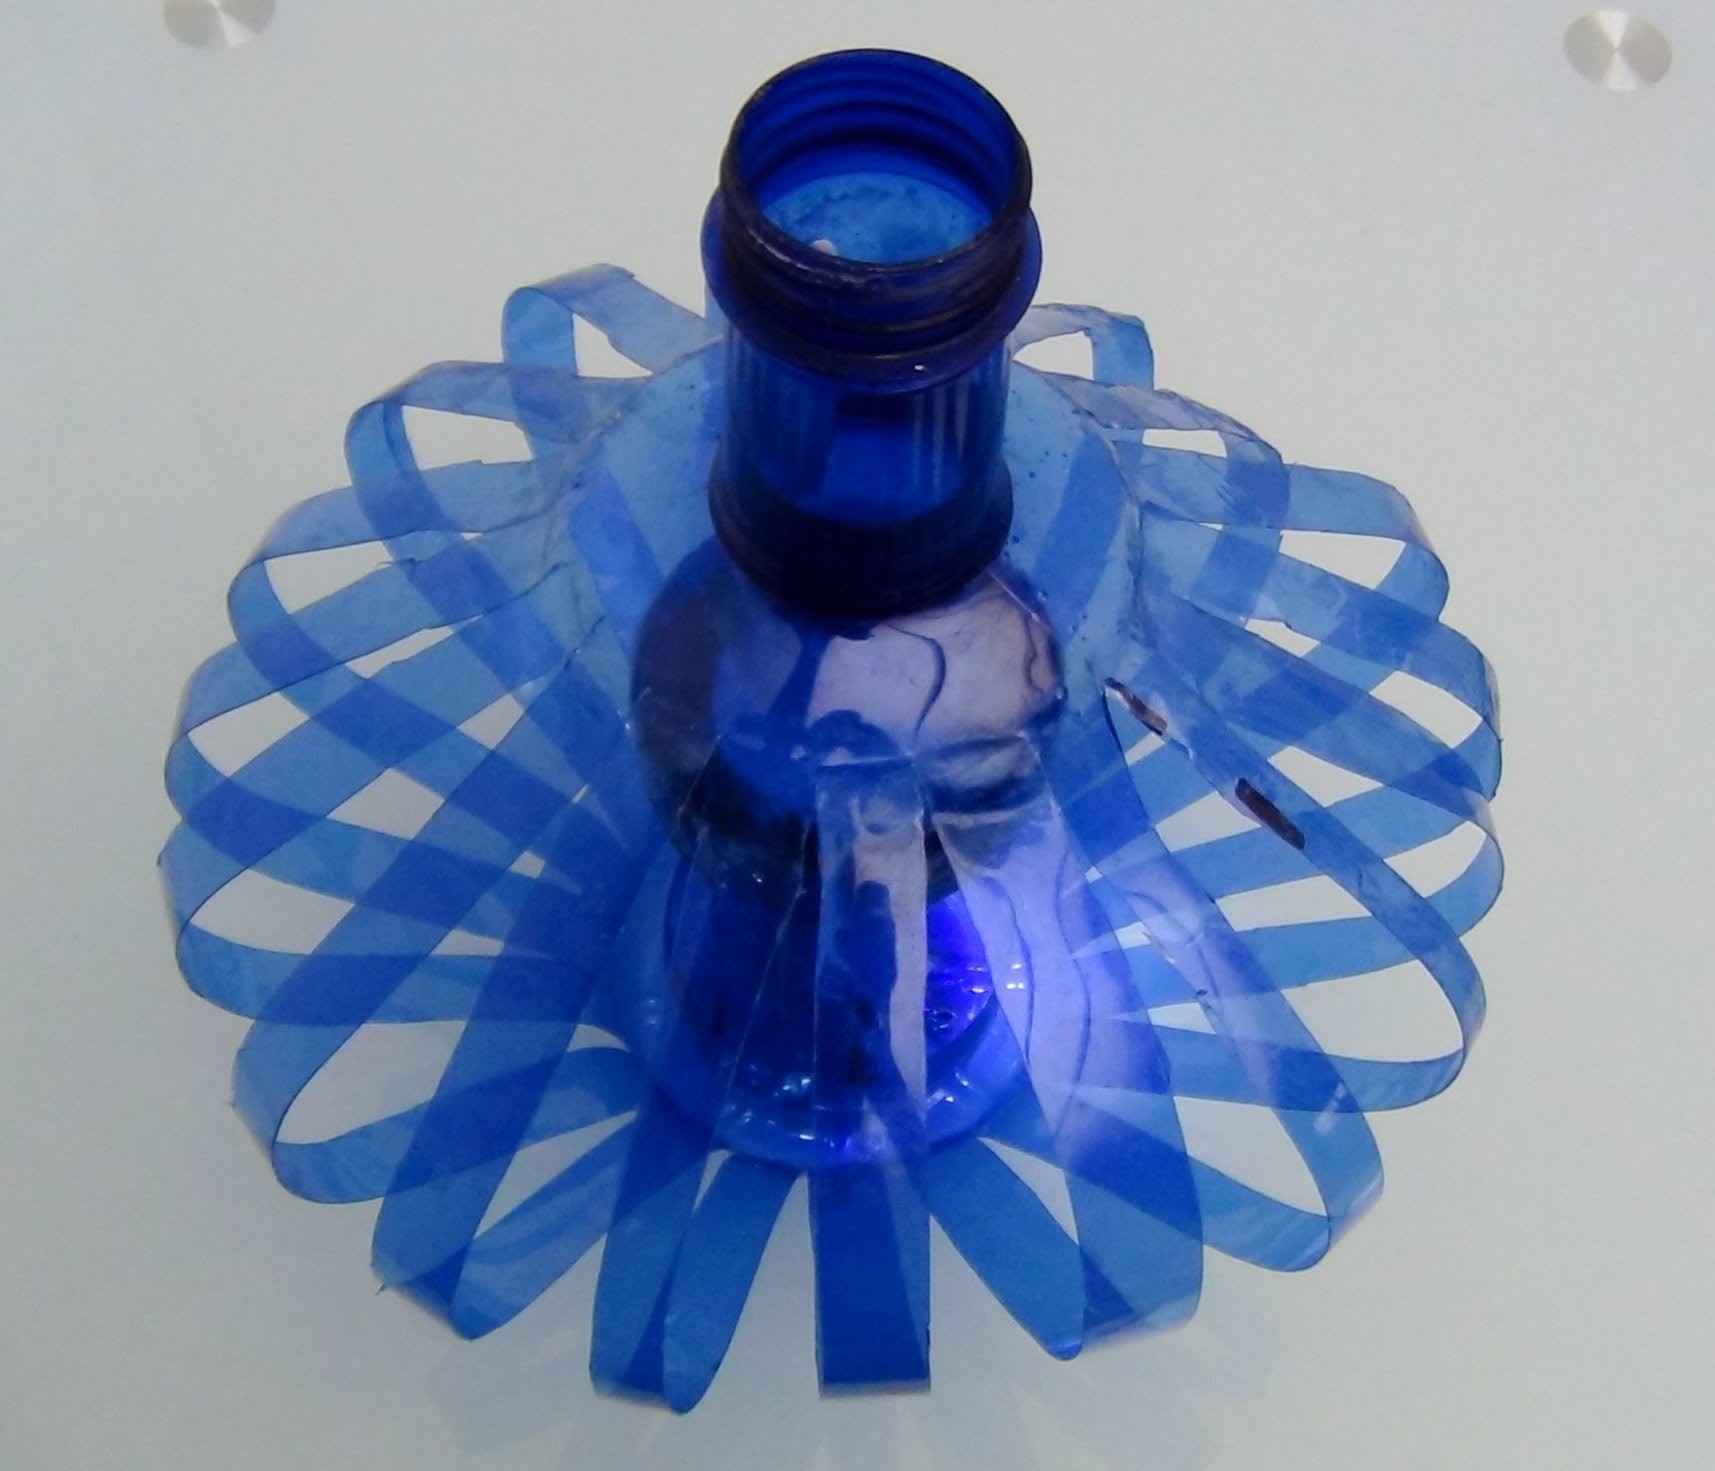 Cómo hacer una lámpara reciclando botellas de plástico - How to recycle plastic bottles